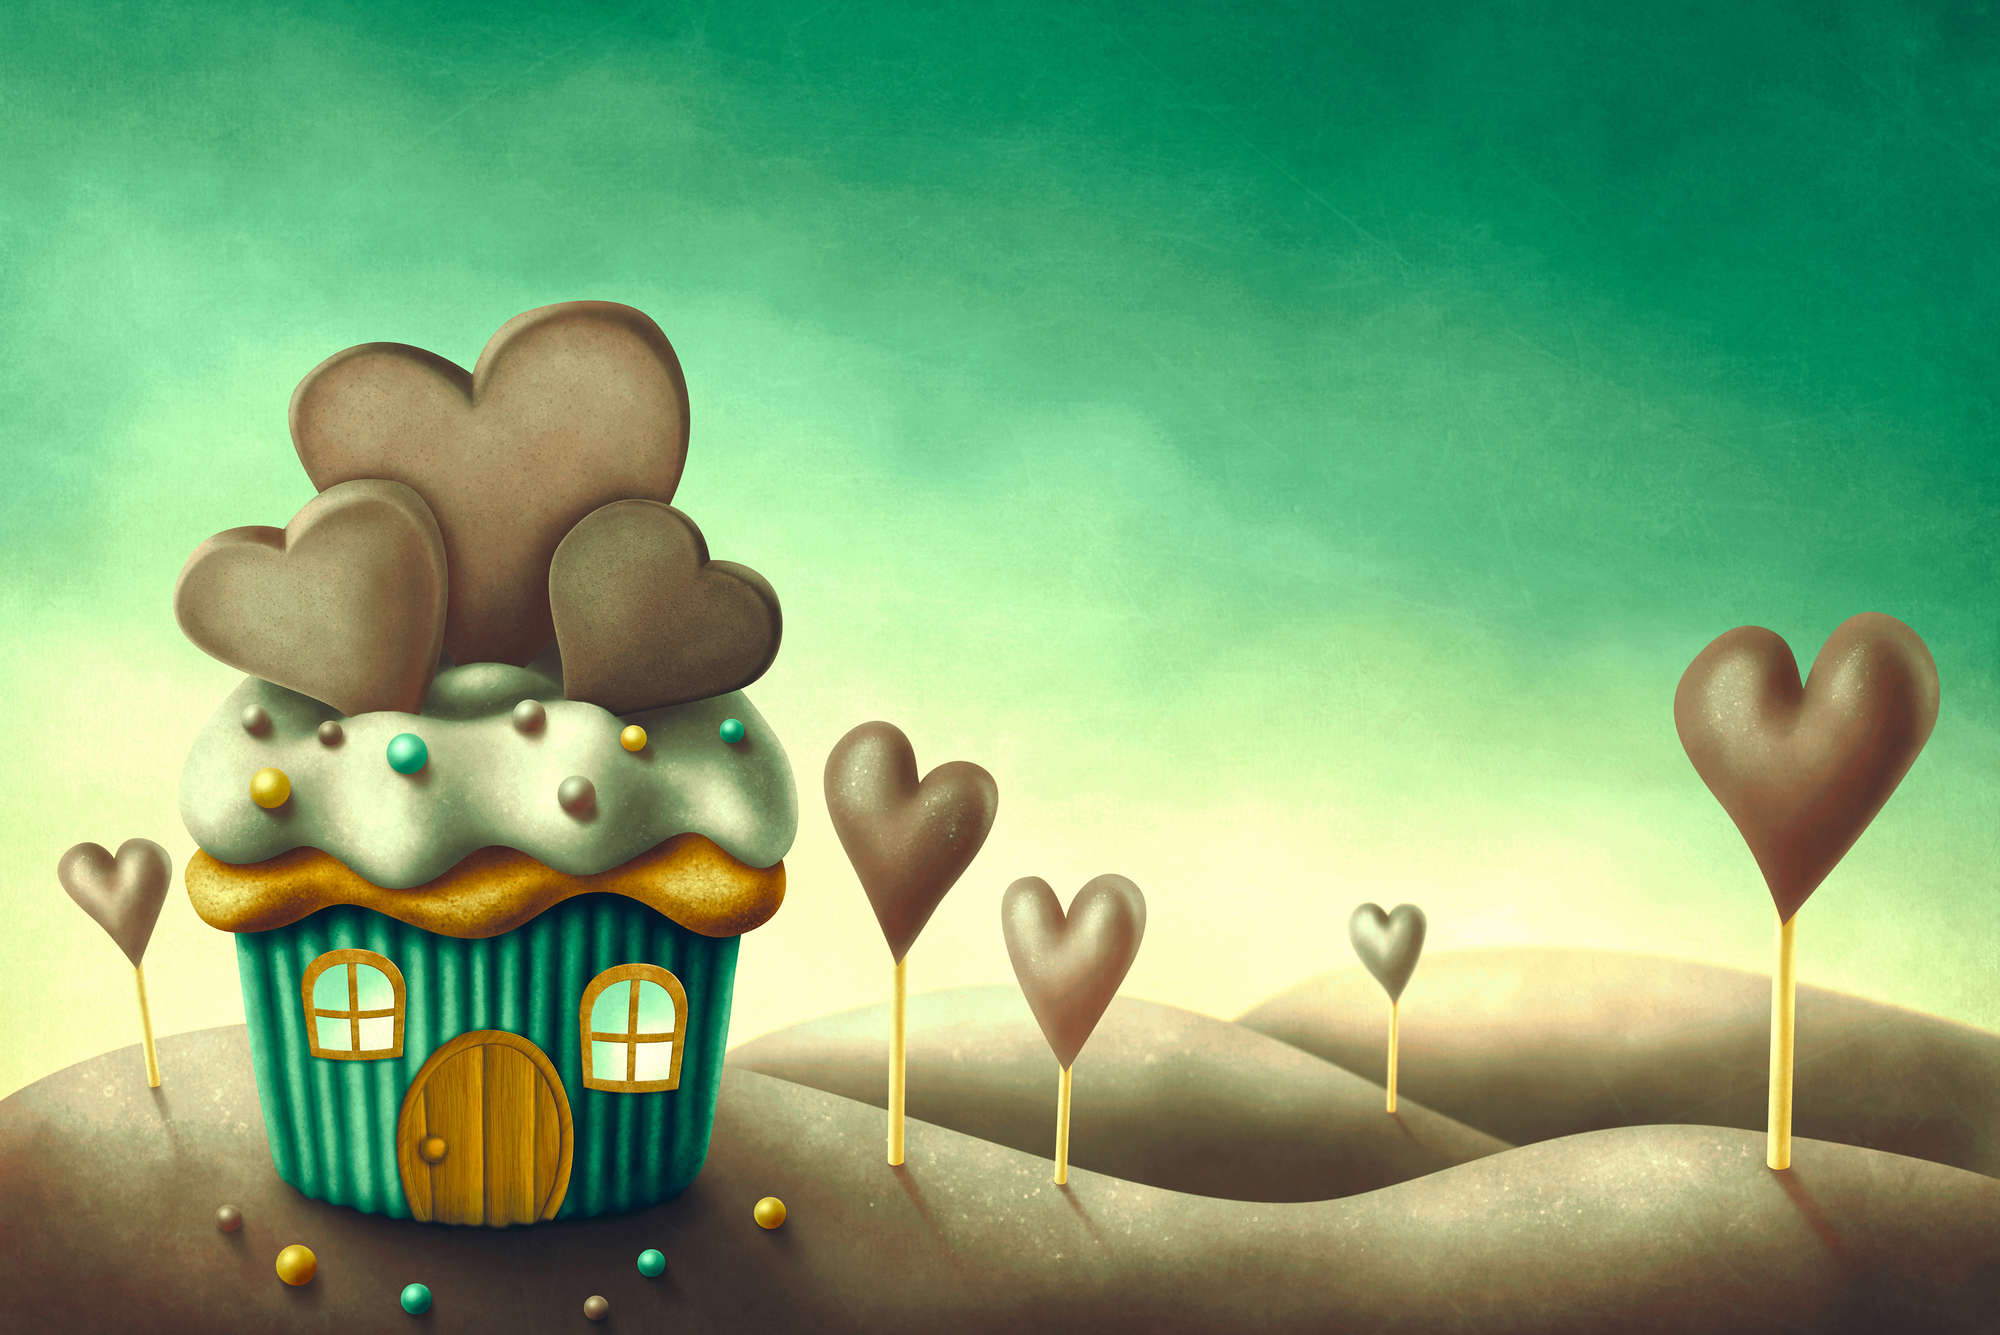             Kindermuurschildering Muffin House in een wereld van snoep op structuurvlieseline
        